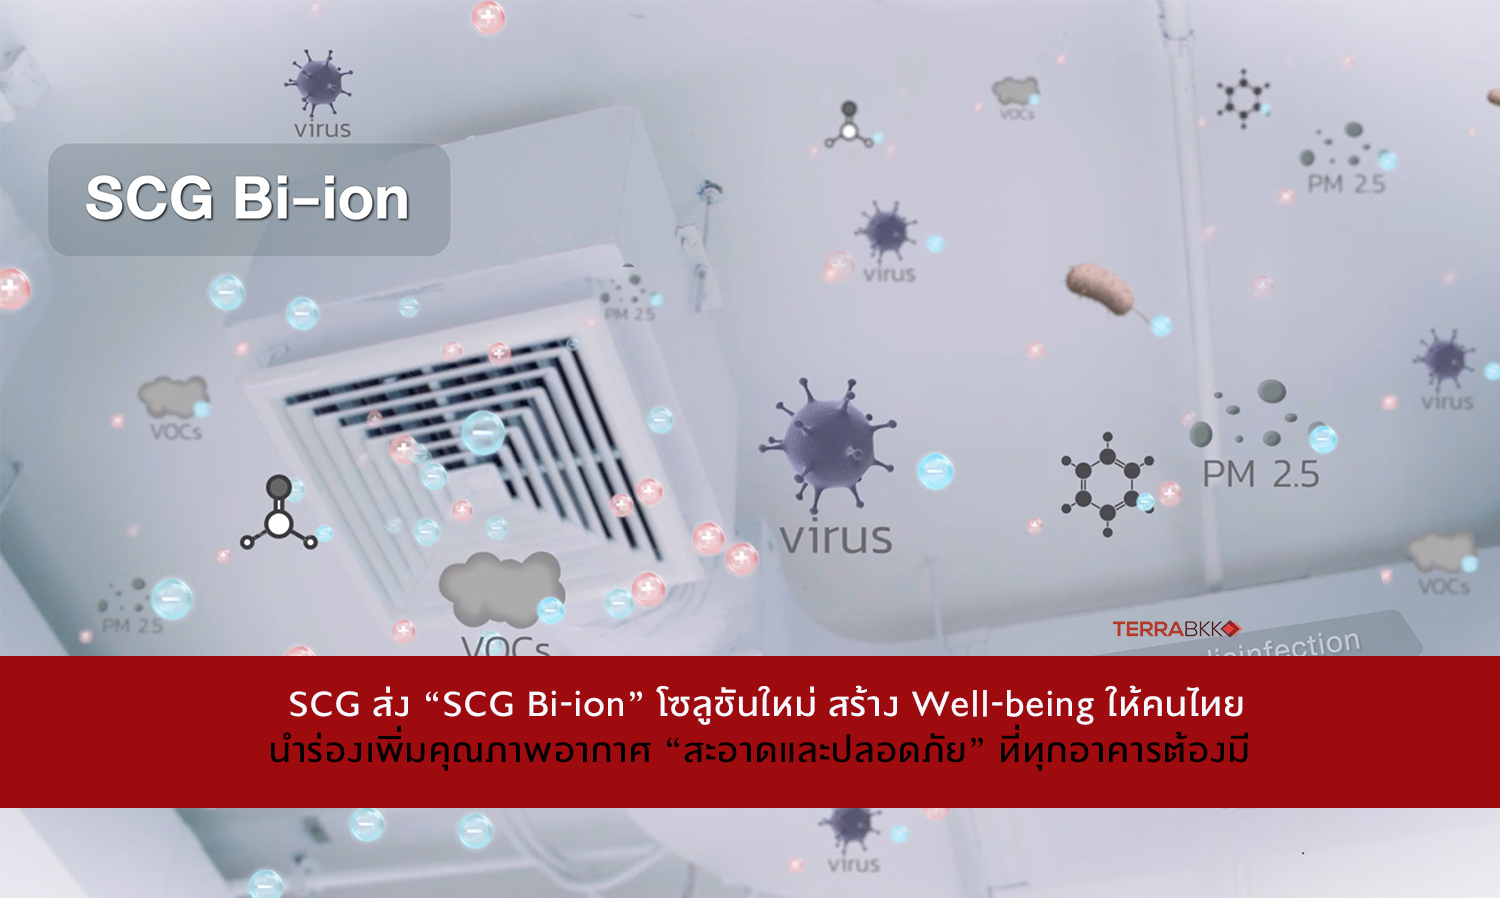 SCG ส่ง “SCG Bi-ion” โซลูชันใหม่ สร้าง Well-being ให้คนไทย  นำร่องเพิ่มคุณภาพอากาศ “สะอาดและปลอดภัย” ที่ทุกอาคารต้องมี